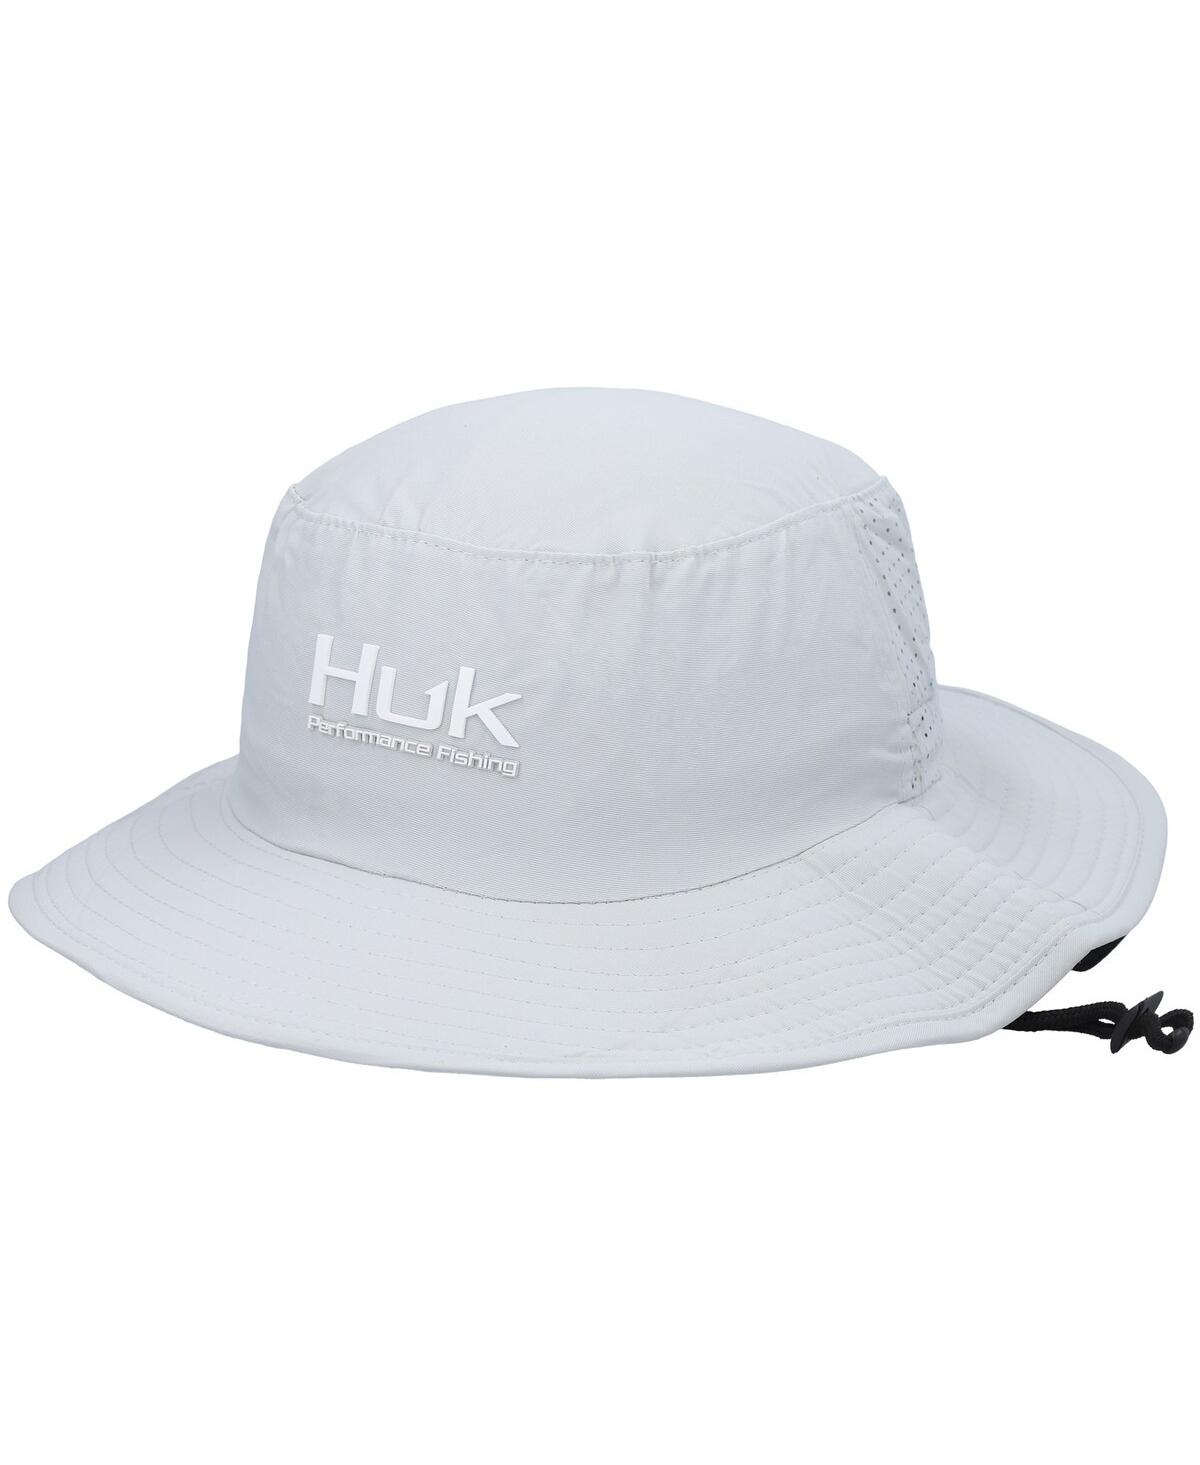 Huk Men's  Gray Solid Boonie Bucket Hat